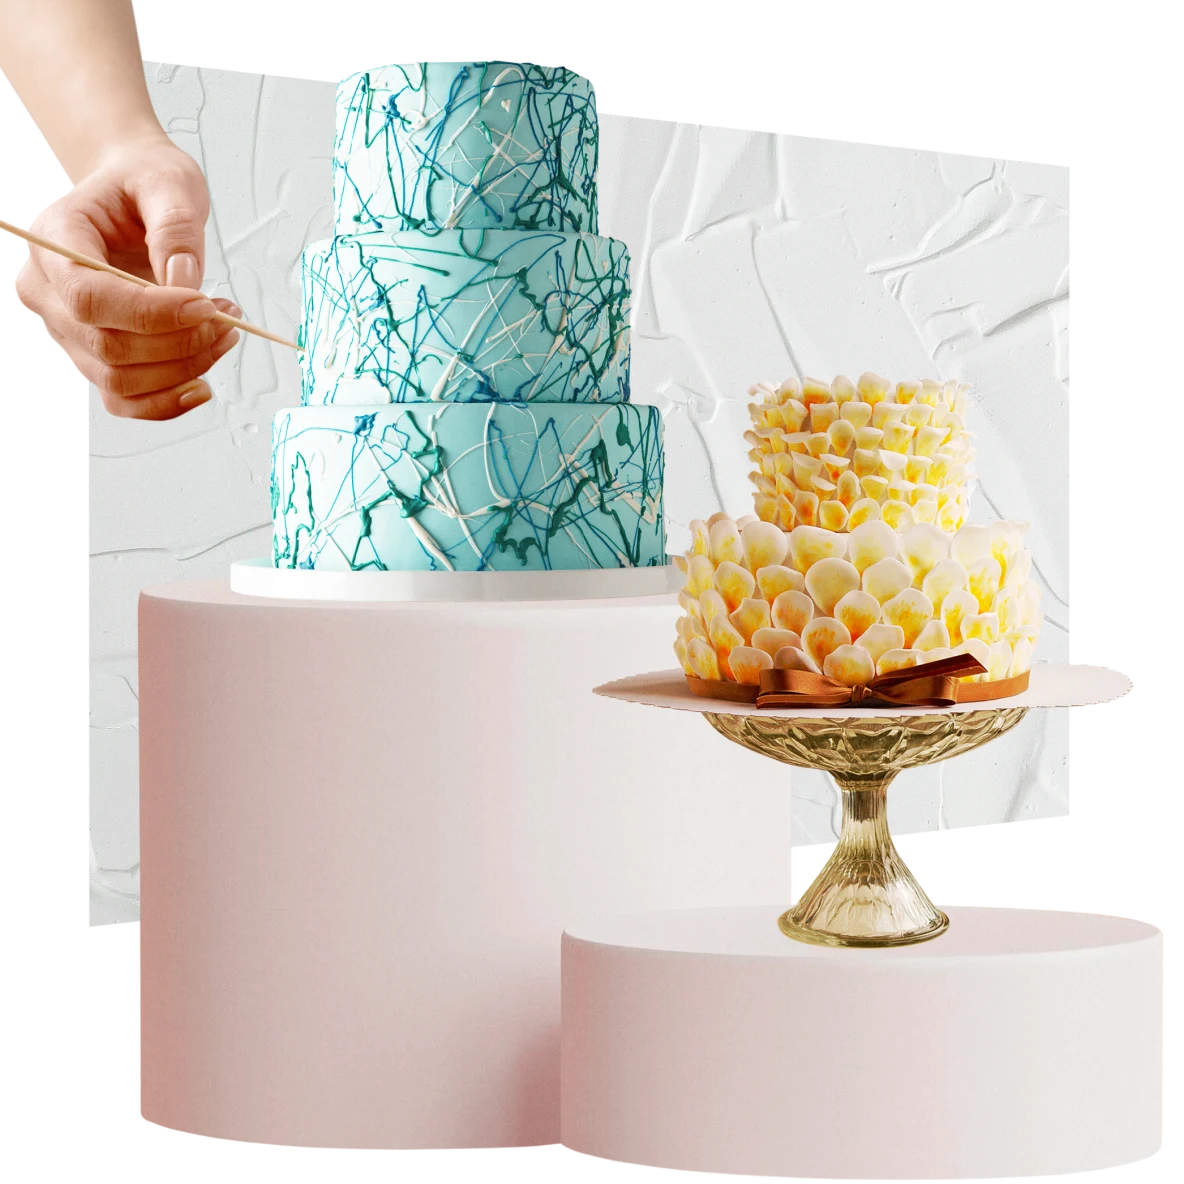 Pastel verde claro de tres pisos a la izquierda; pastel amarillo y blanco de dos capas a la derecha. Una mano aplica detalles al pastel de la izquierda. Fondo de glaseado blanco.